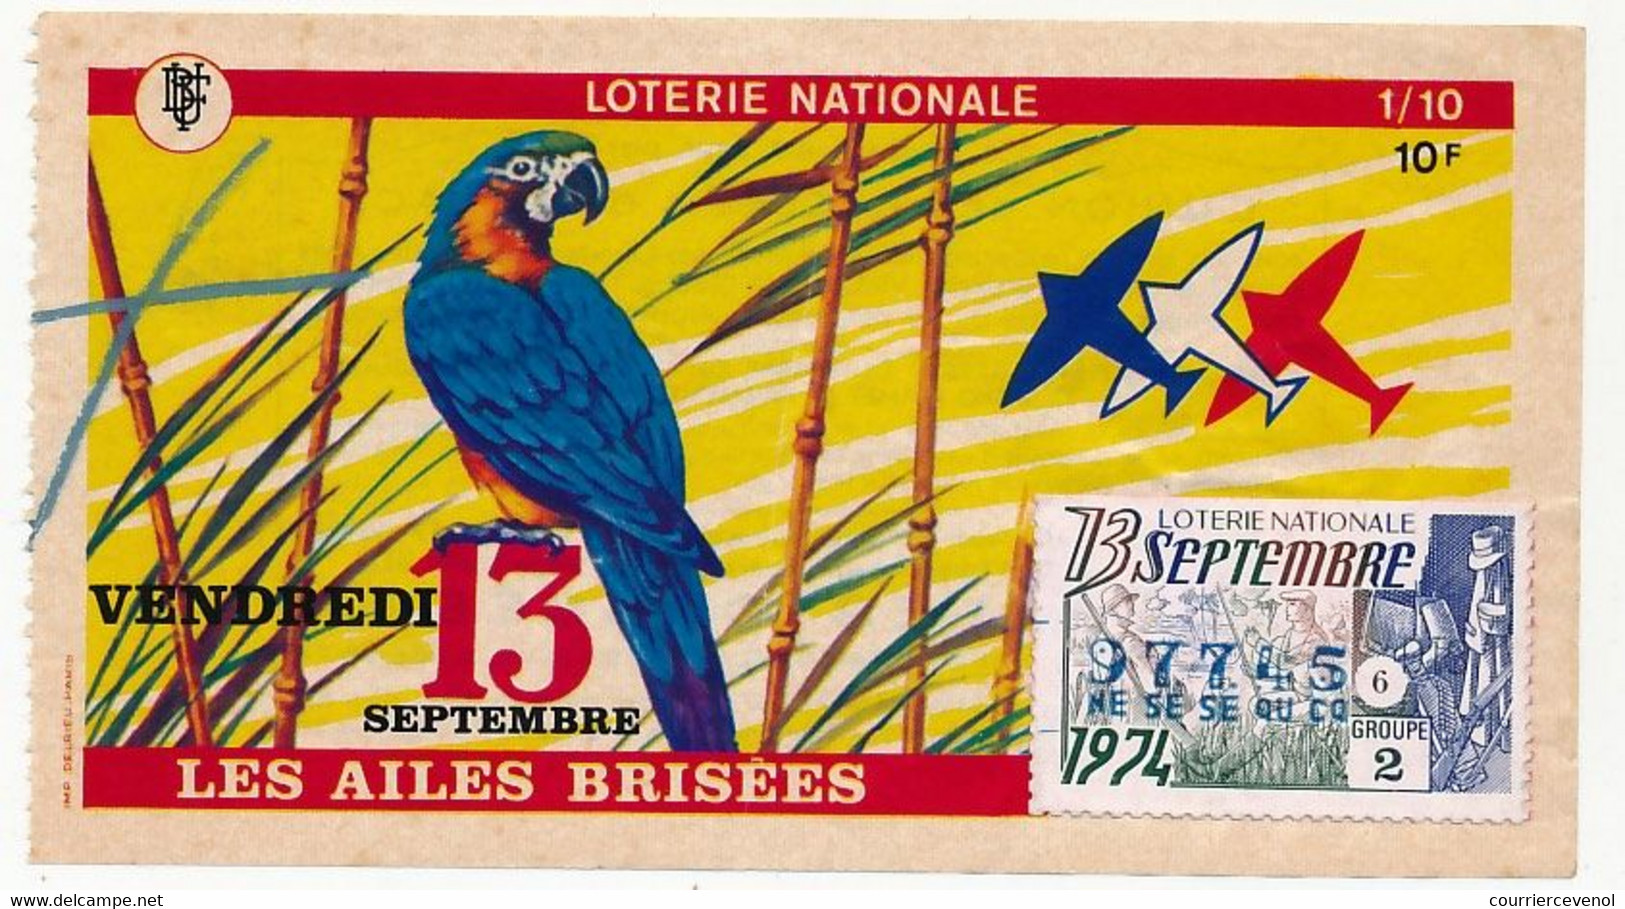 FRANCE - Loterie Nationale - 1/10ème - Les Ailes Brisées - (Perroquet) - Vendredi 13 Septembre 1974 - Lottery Tickets